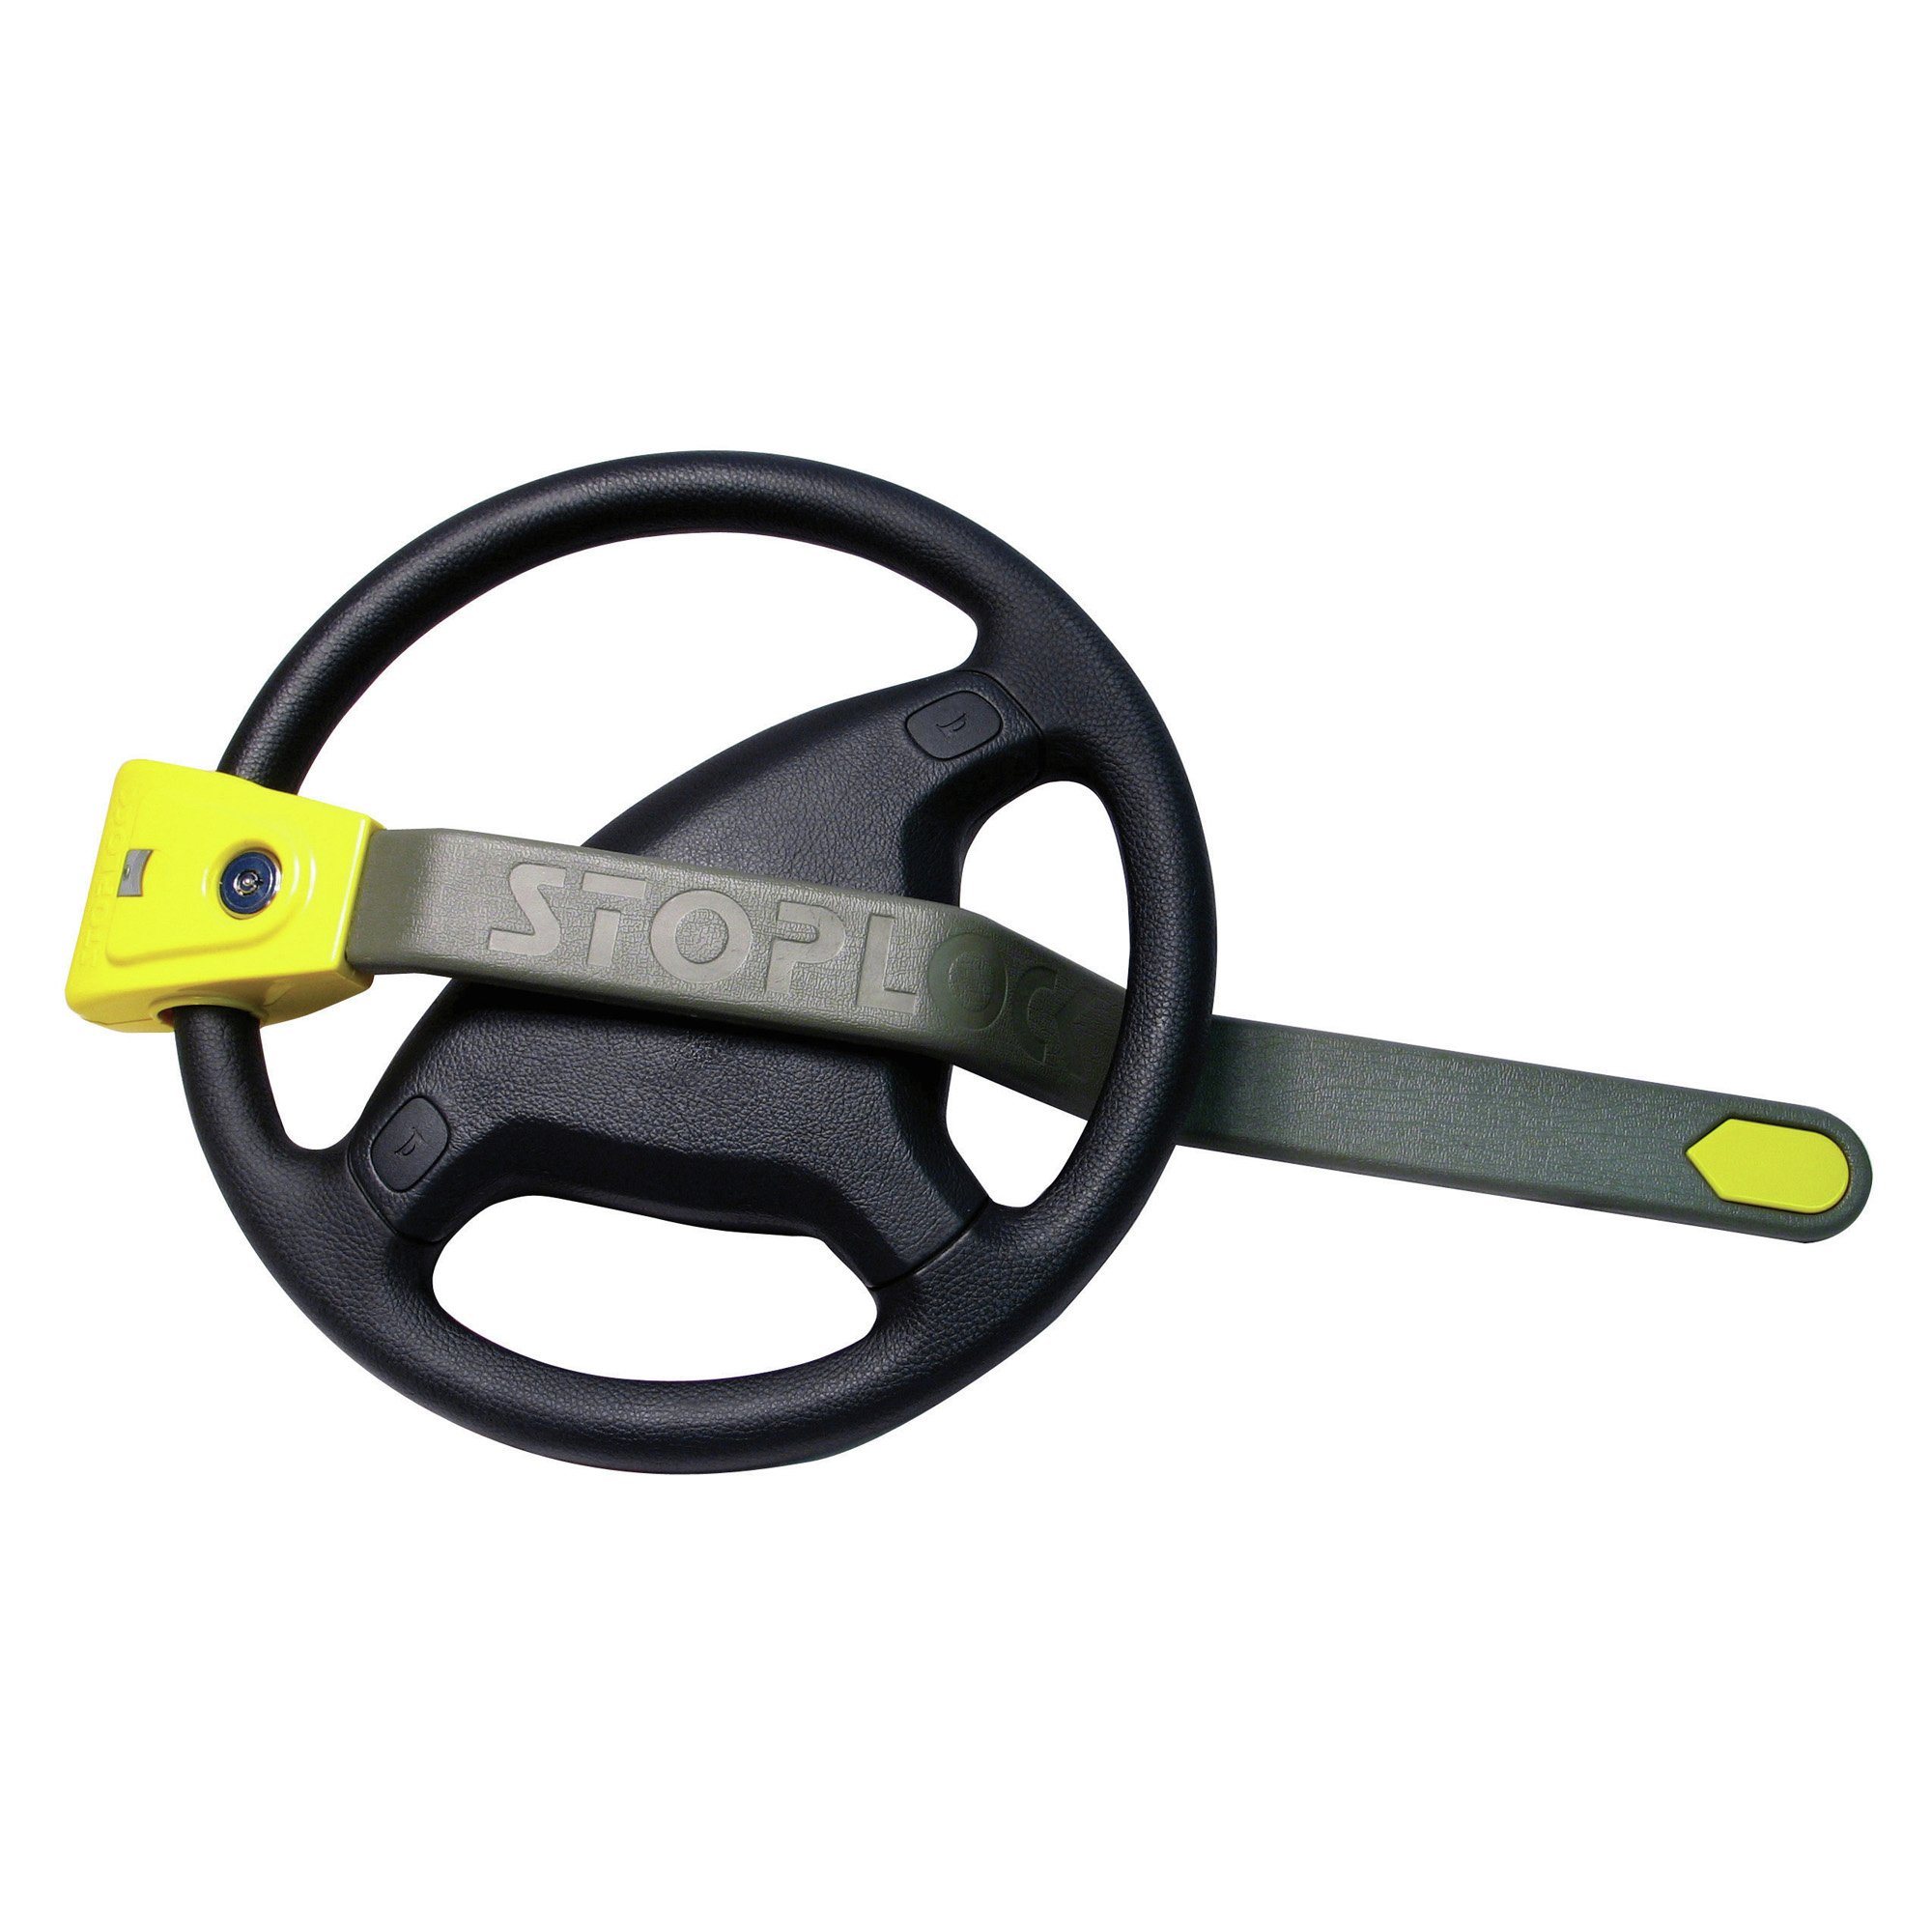 Stoplock Airbag 4x4 Steering Wheel Lock.